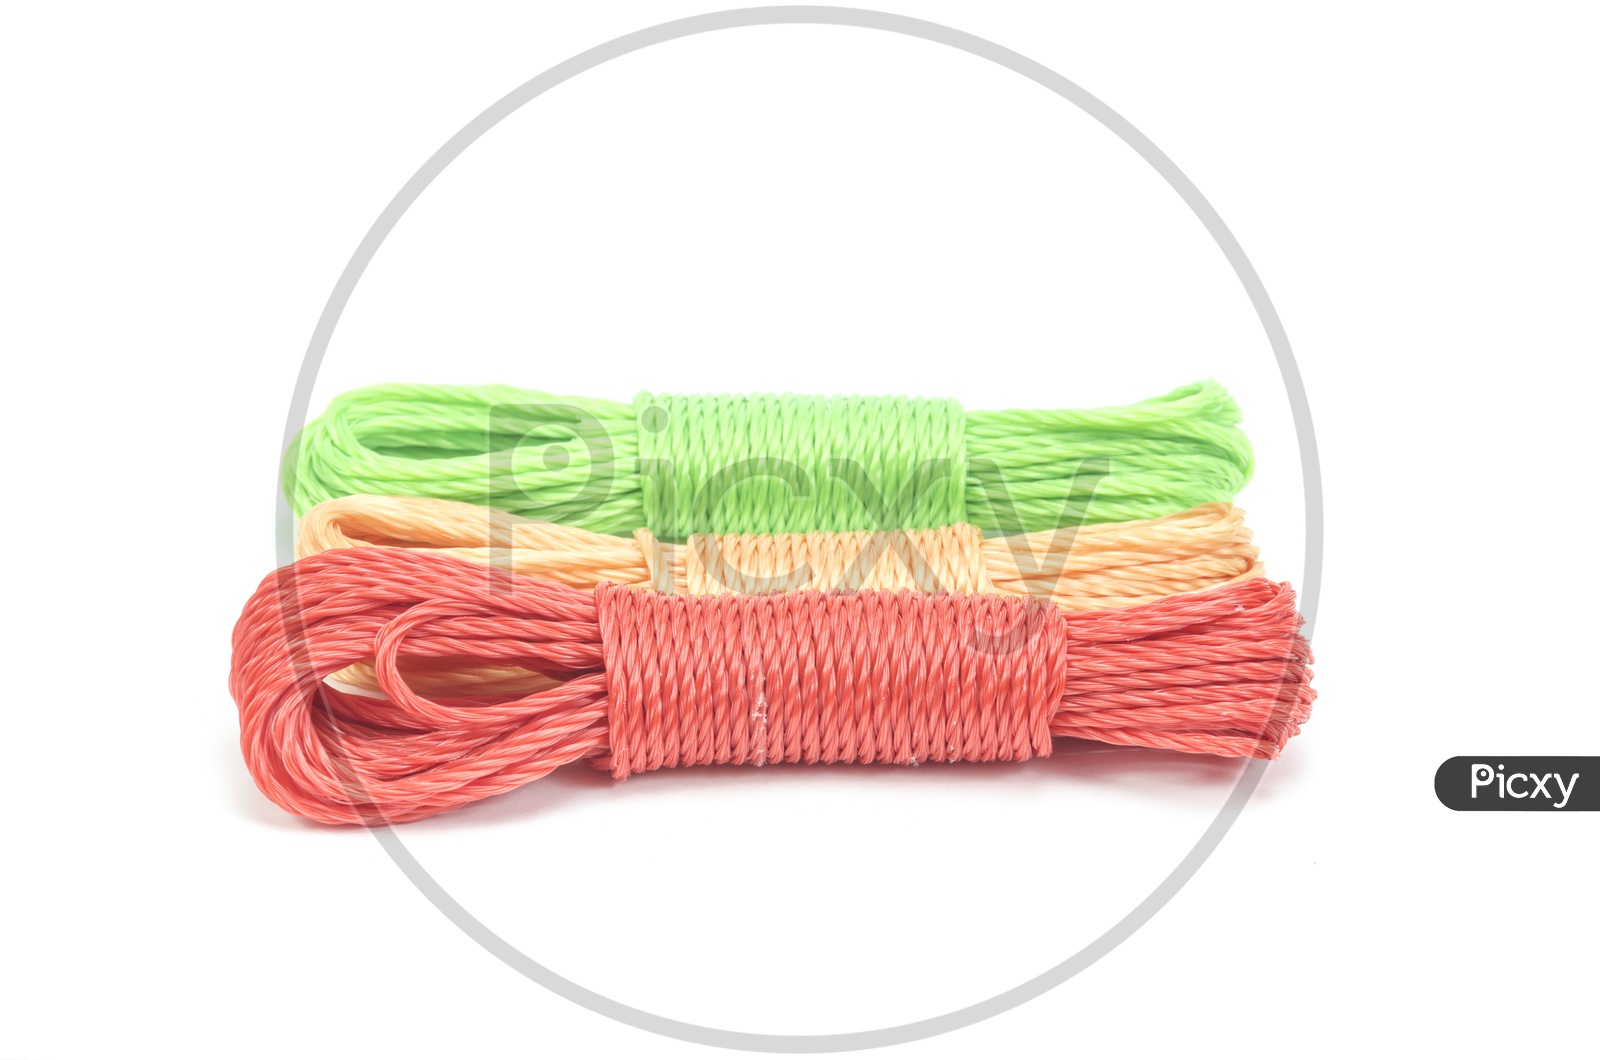 Bundle Of Nylon Ropes On an Isolated White Background